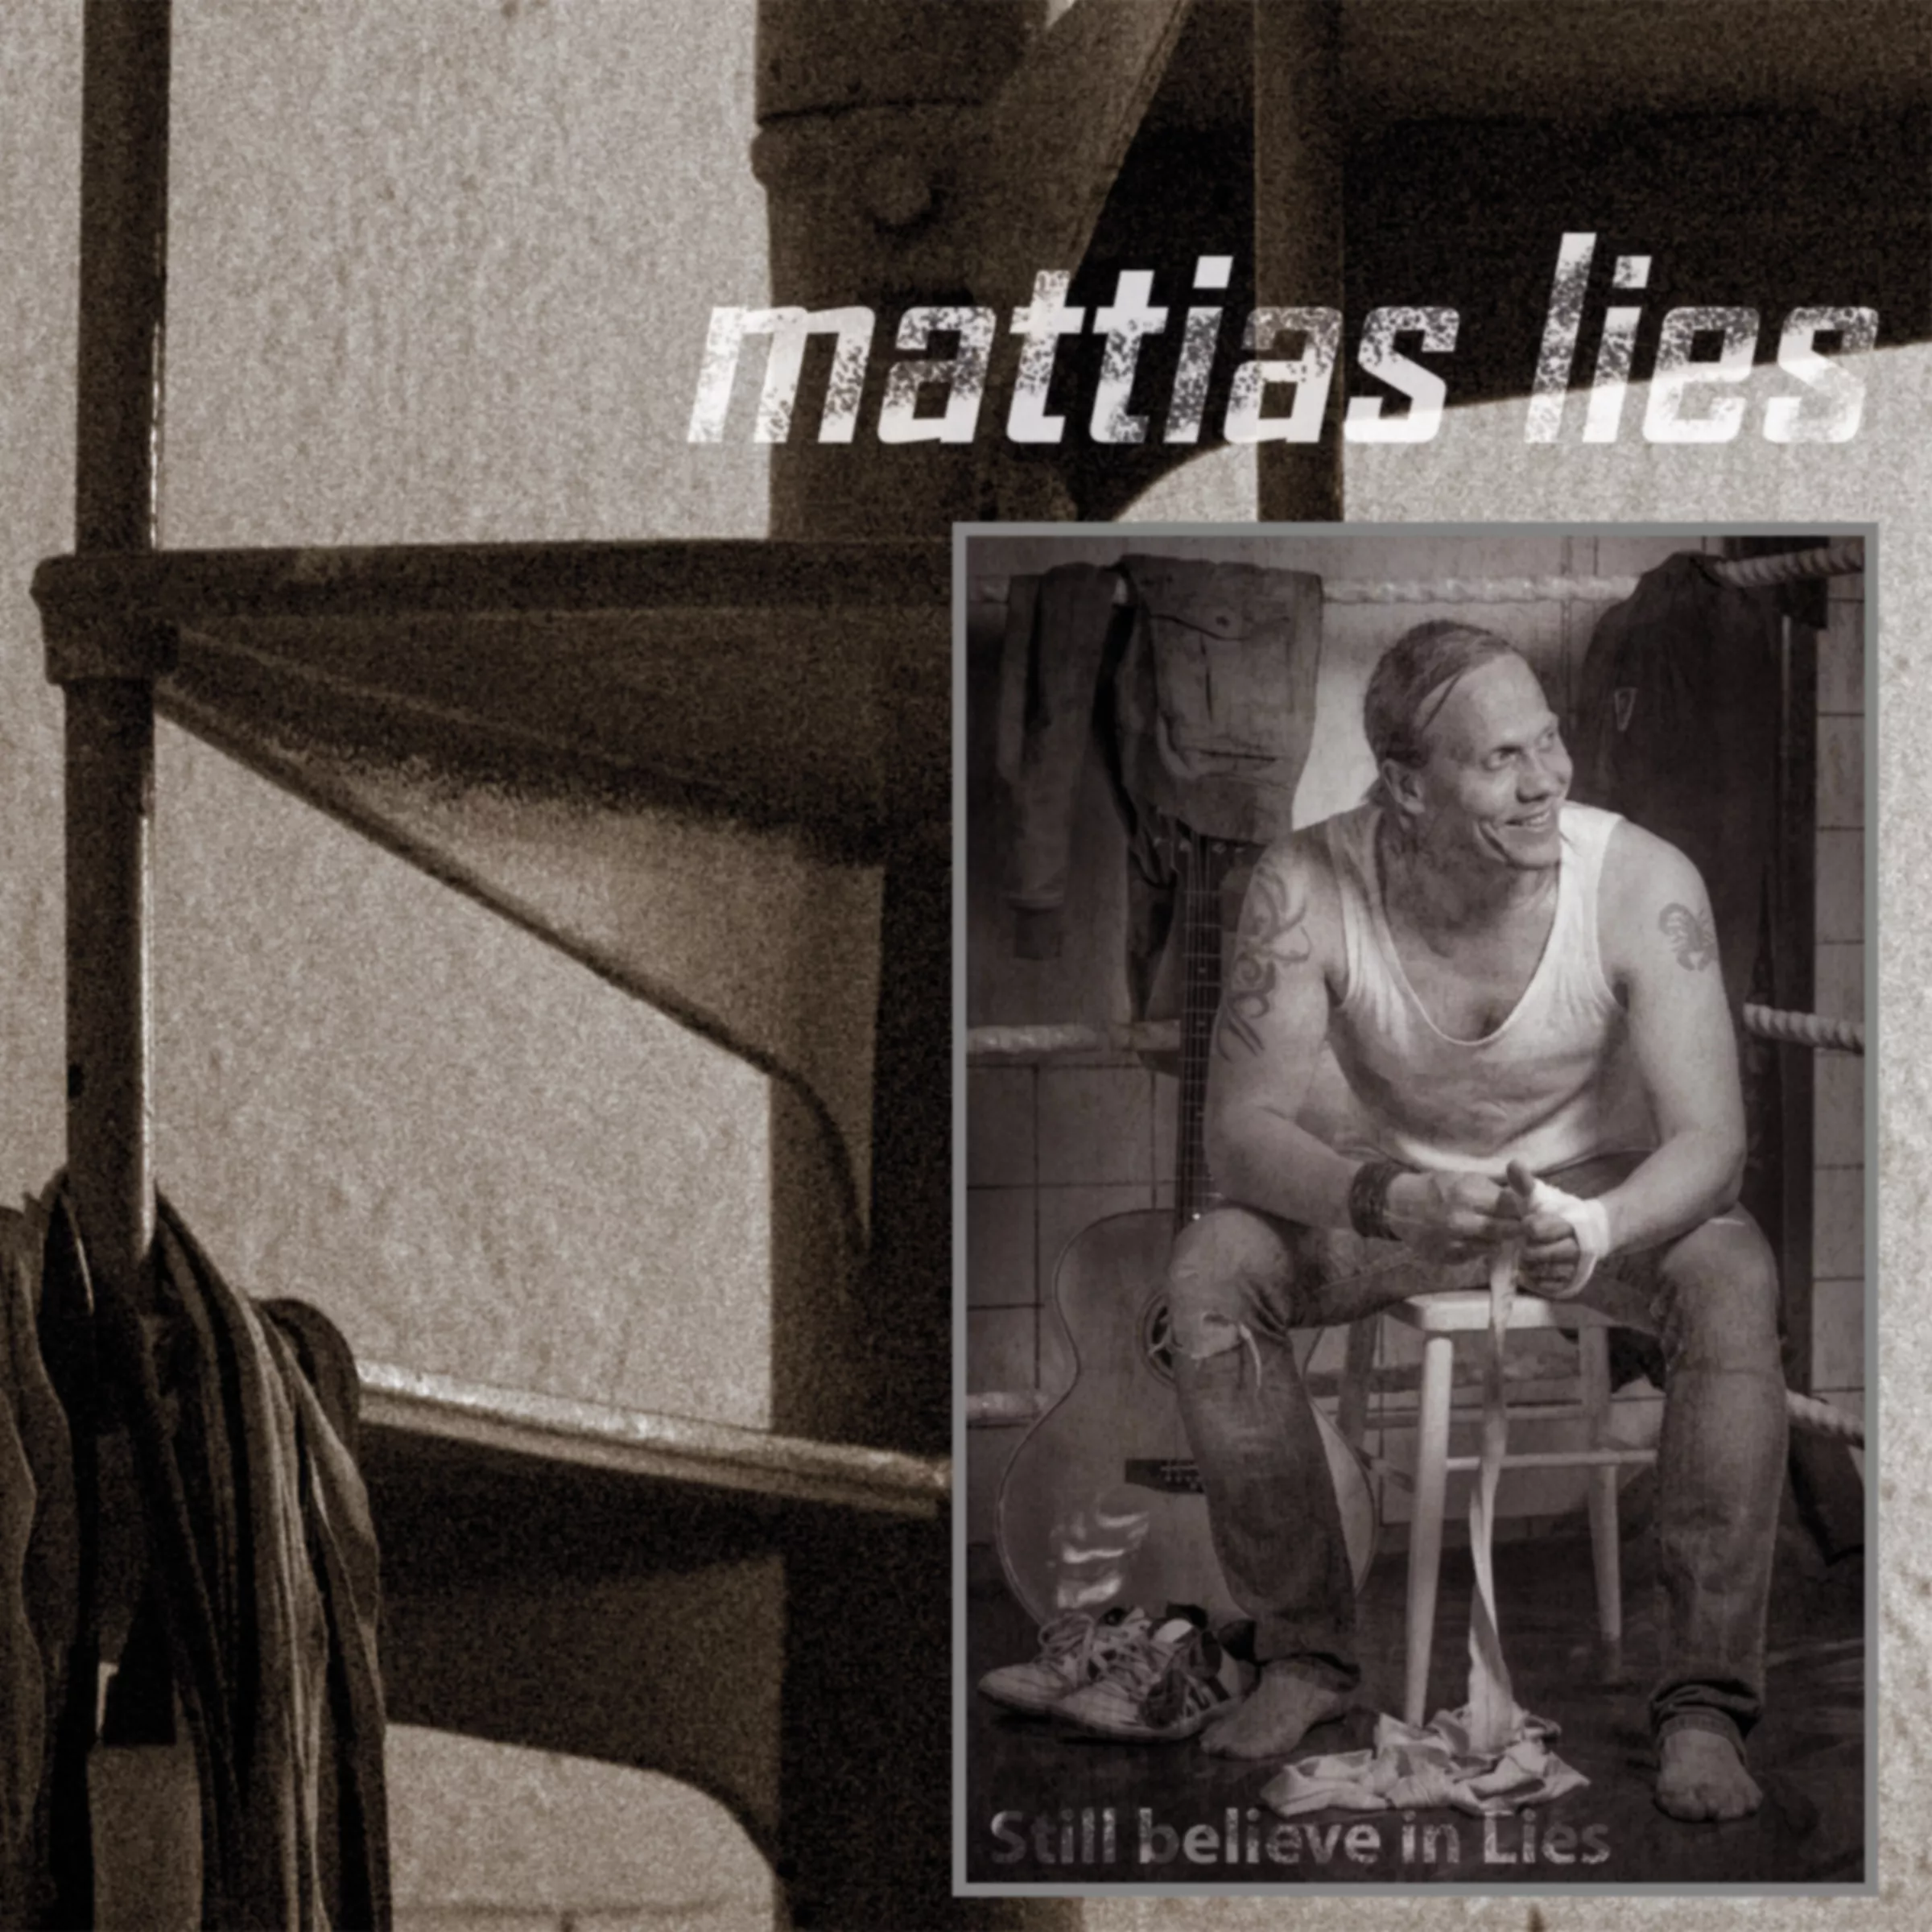 Still Believe In Lies - Mattias Lies